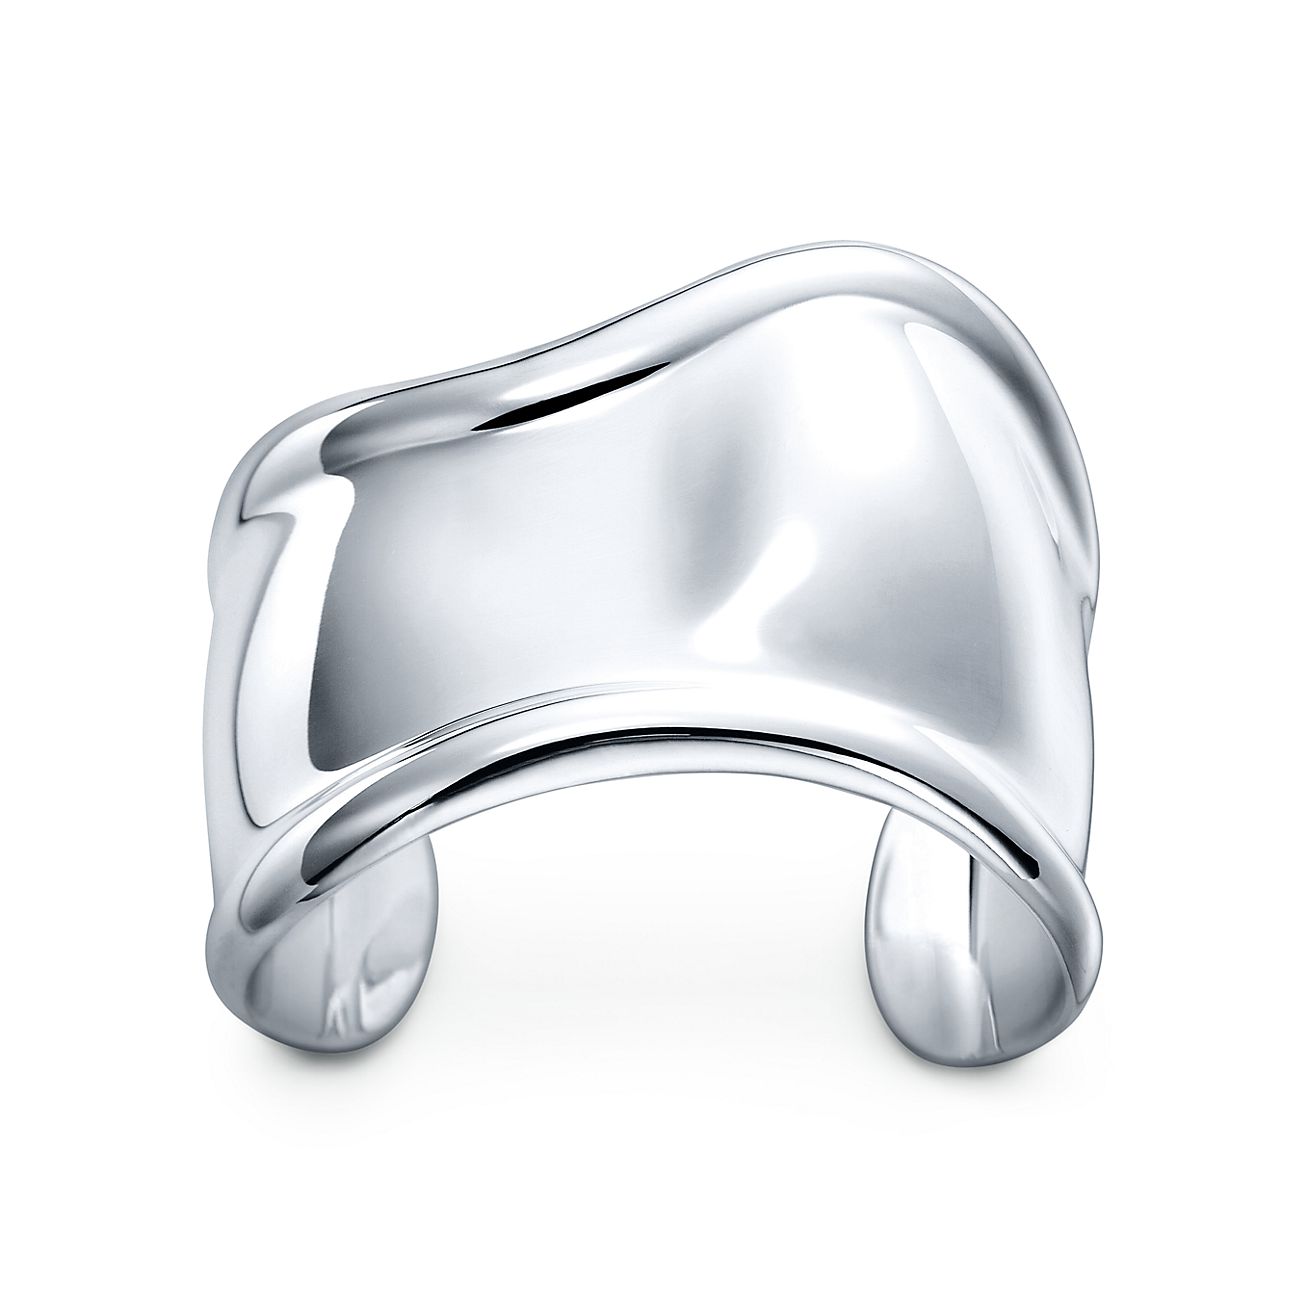 Elsa Peretti® small Bone cuff in sterling silver, 43 mm wide.